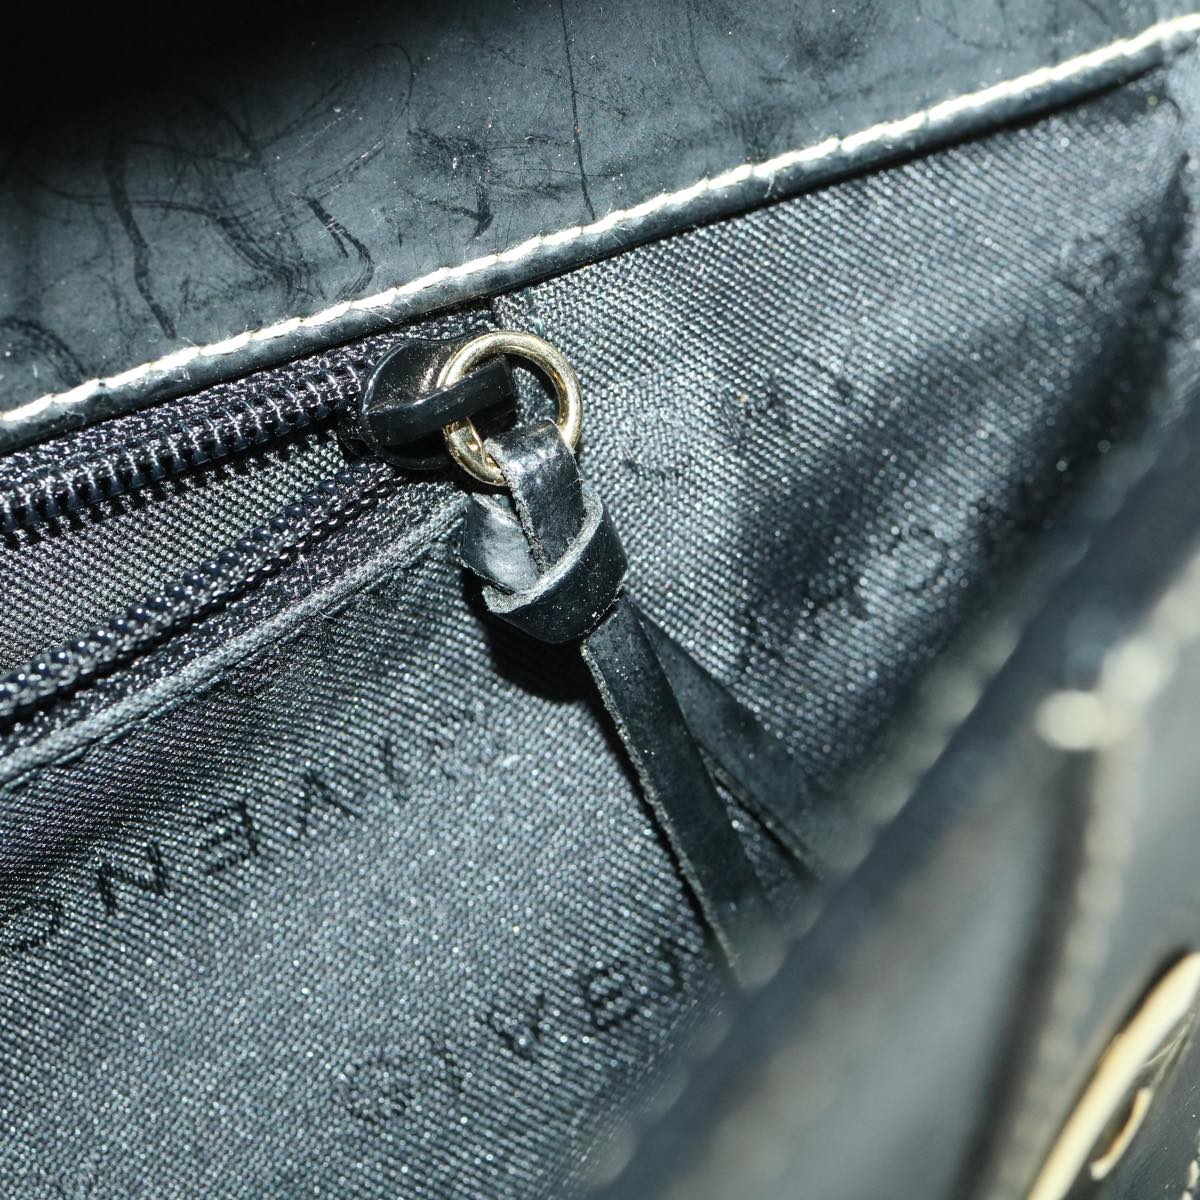 GIVENCHY Shoulder Bag Leather Black Auth am1875g